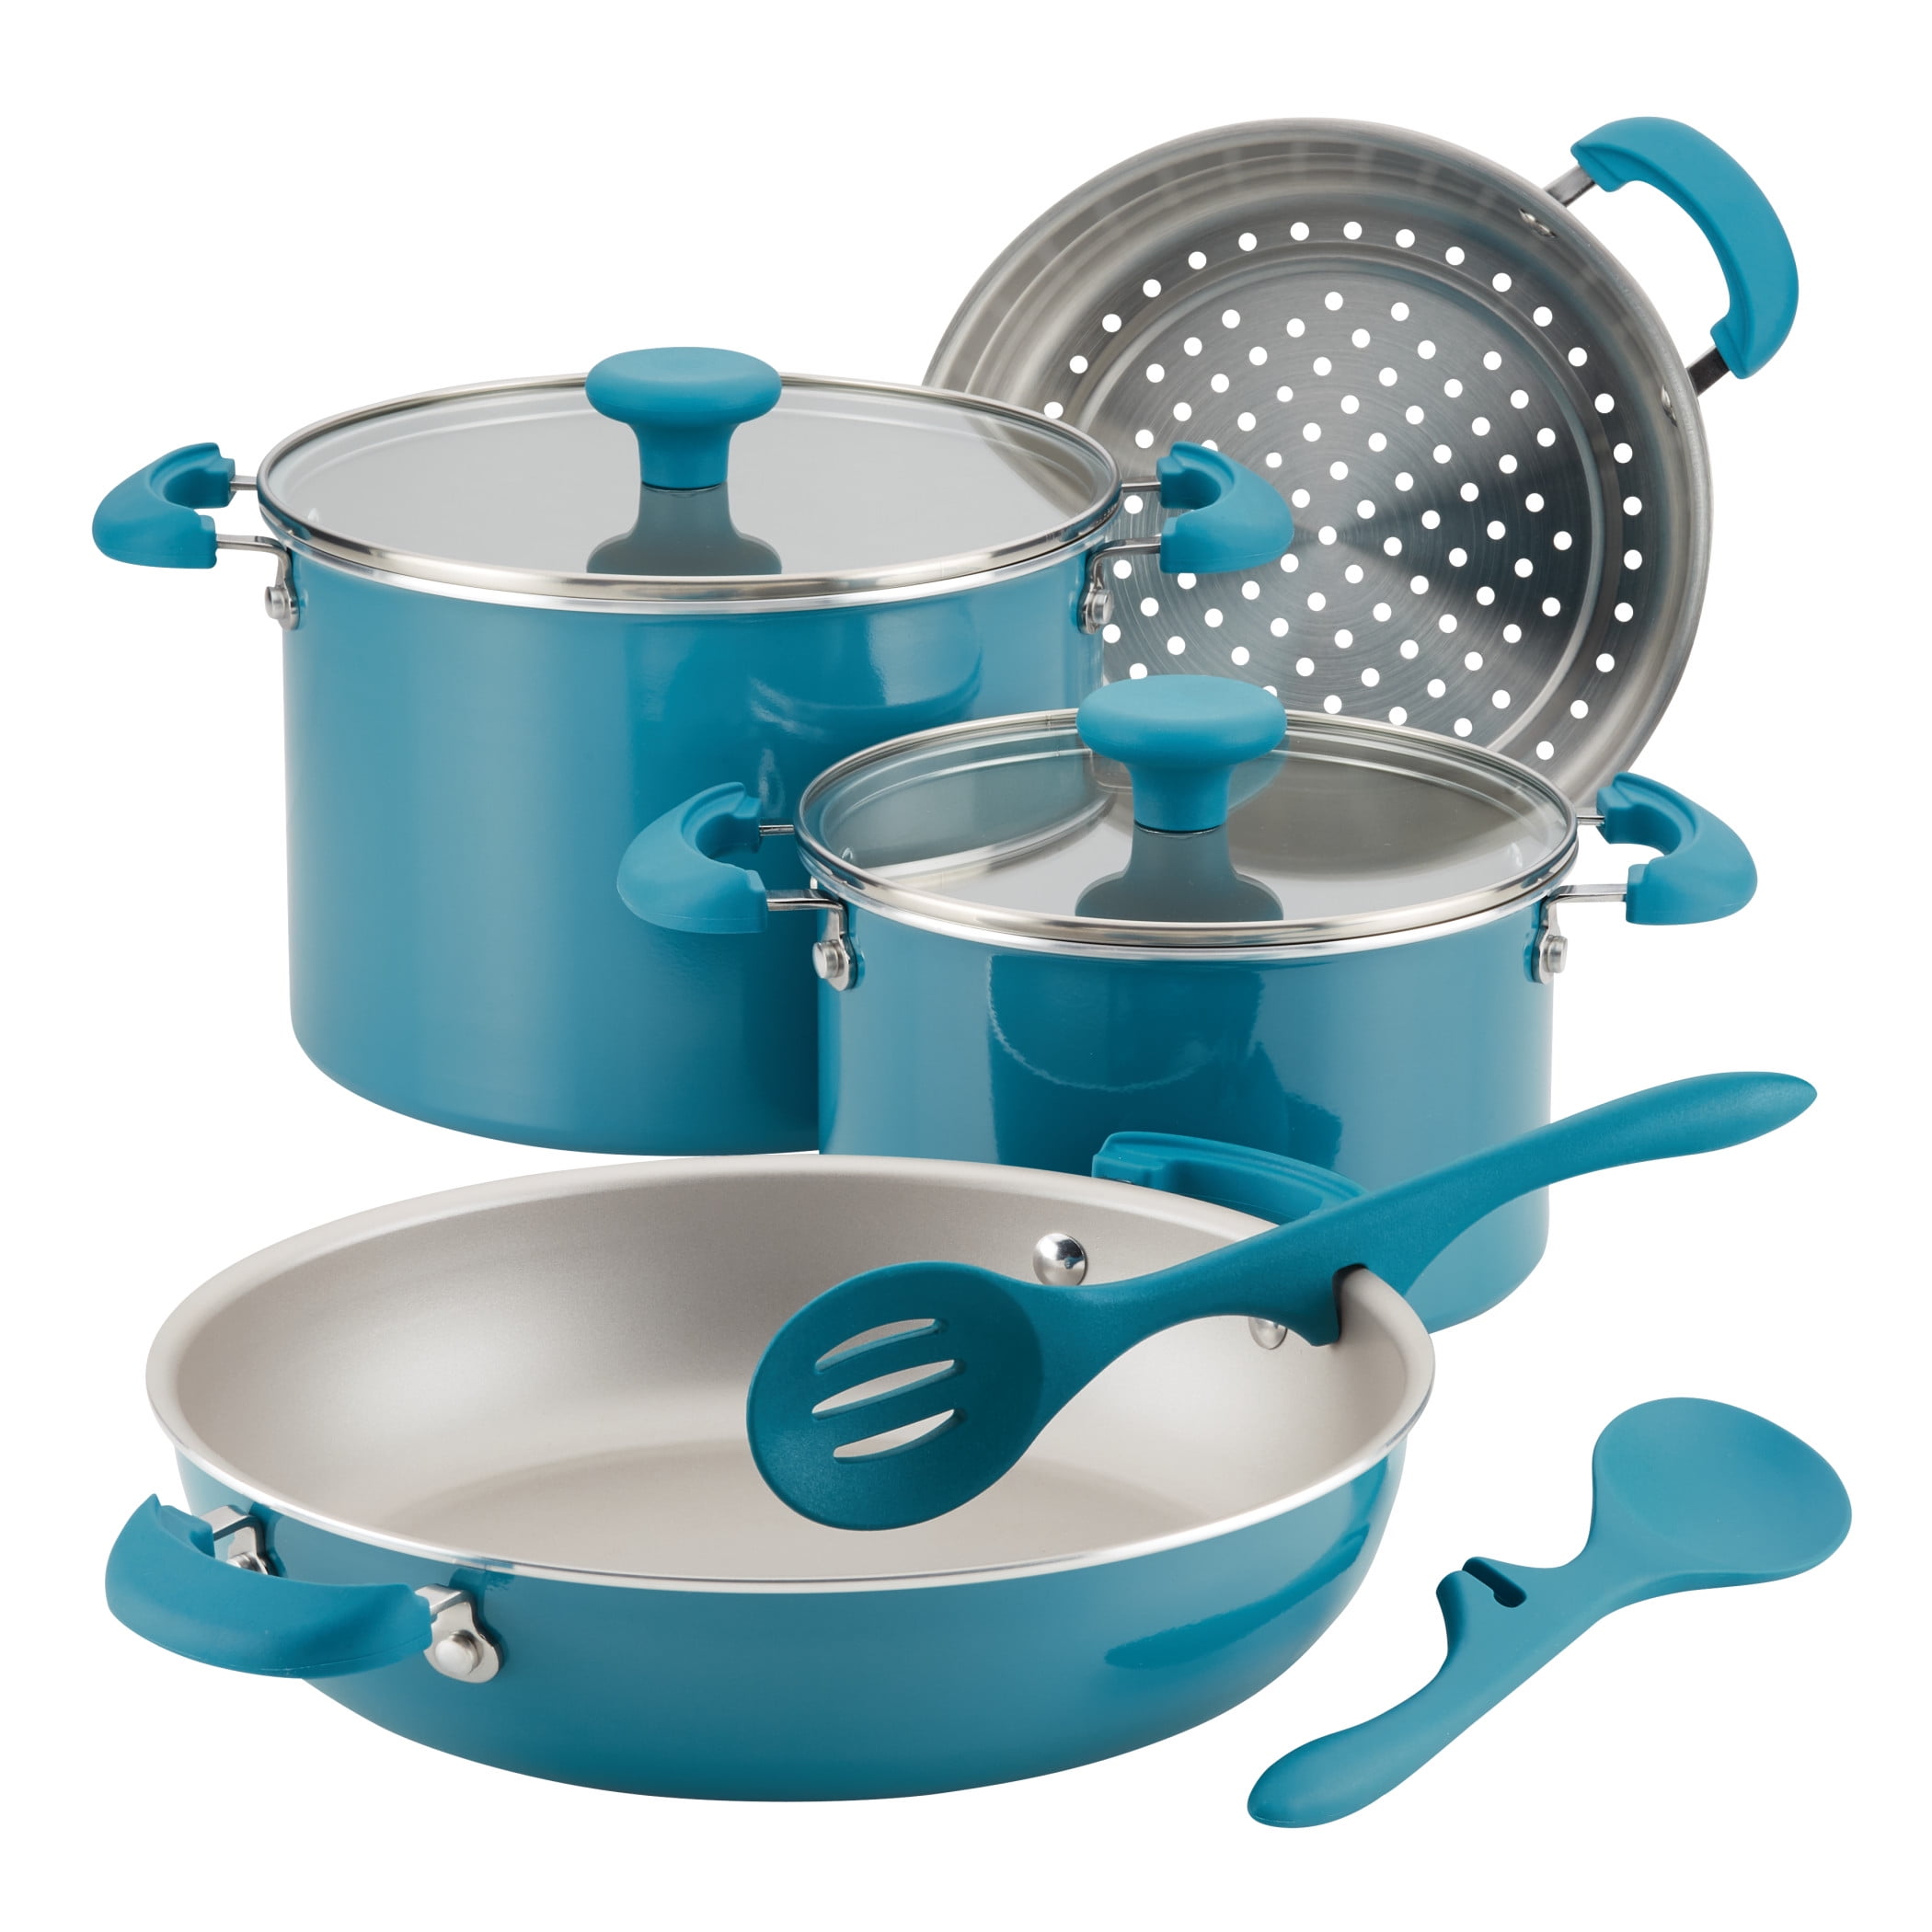 Details about   Nonstick 15 Piece Hard Enamel Aluminum Pots & Pans Cookware Set Marine Blue 